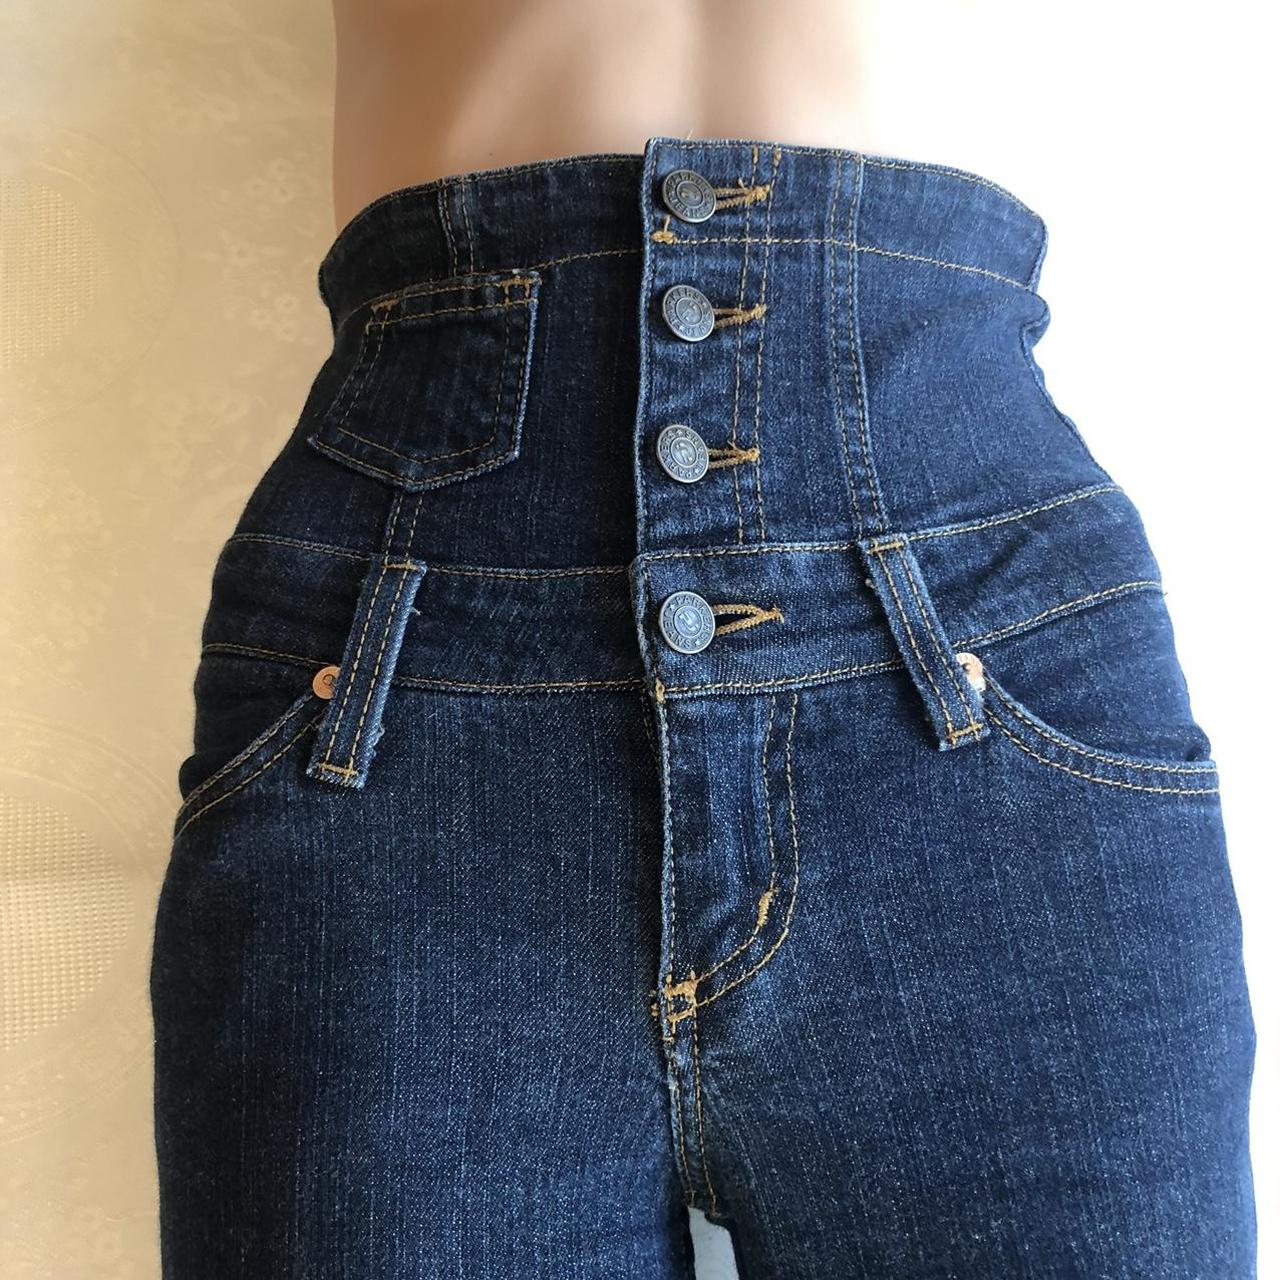 Product Image 4 - Parker’s PJ Women’s Blue Jeans